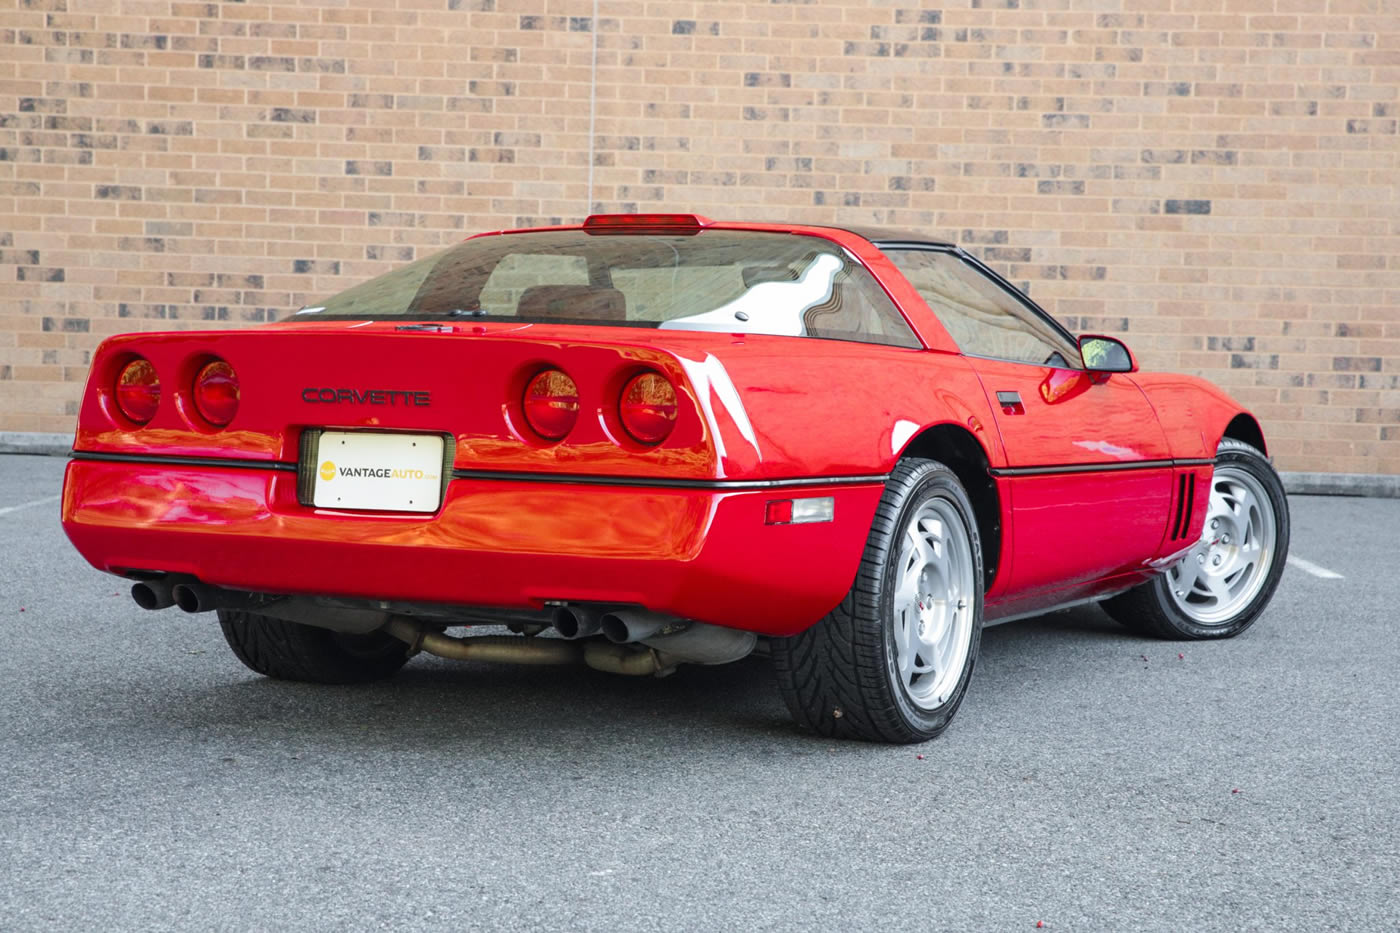 1990 Corvette Coupe in Bright Red